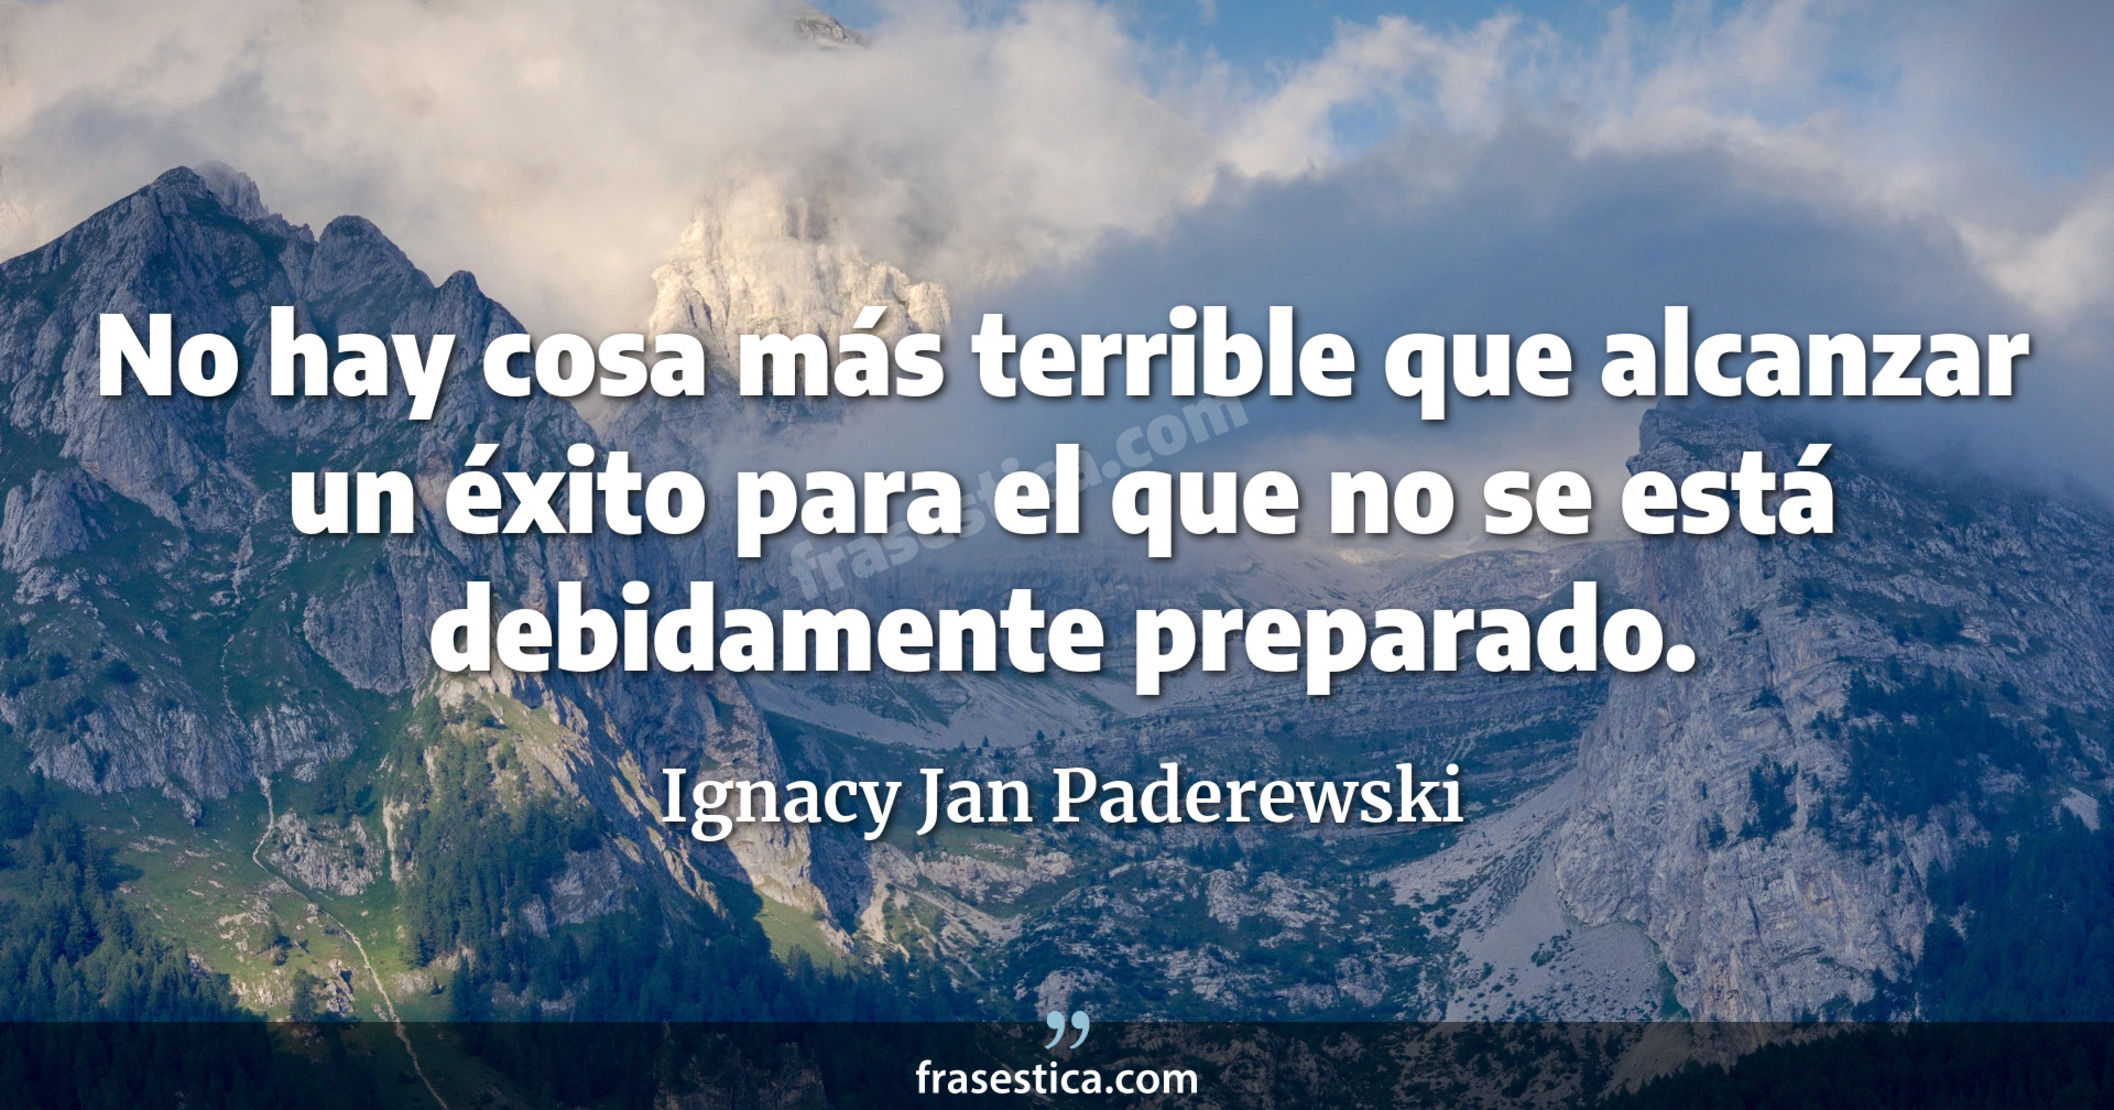 No hay cosa más terrible que alcanzar un éxito para el que no se está debidamente preparado. - Ignacy Jan Paderewski